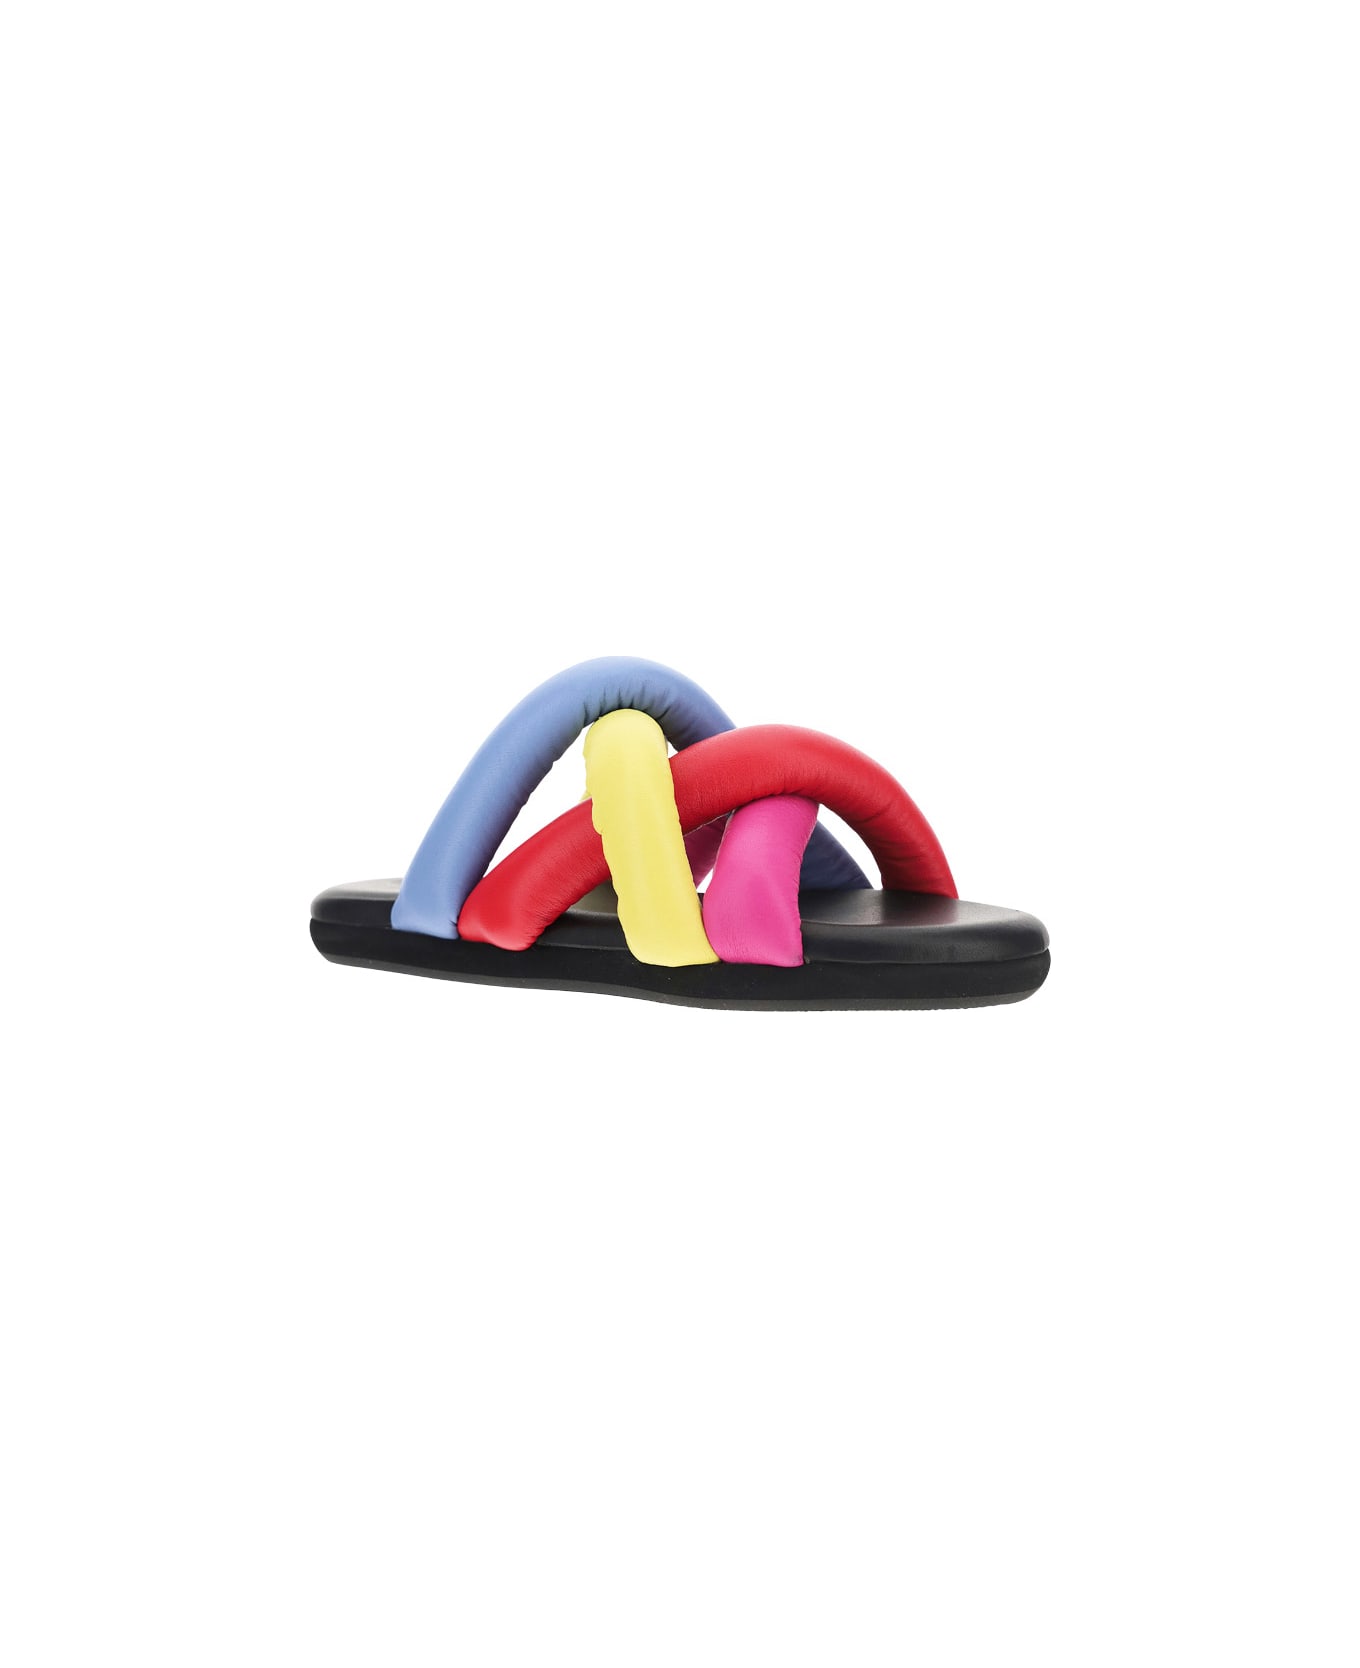 Moncler Jbaided Sandals - Multi-colour